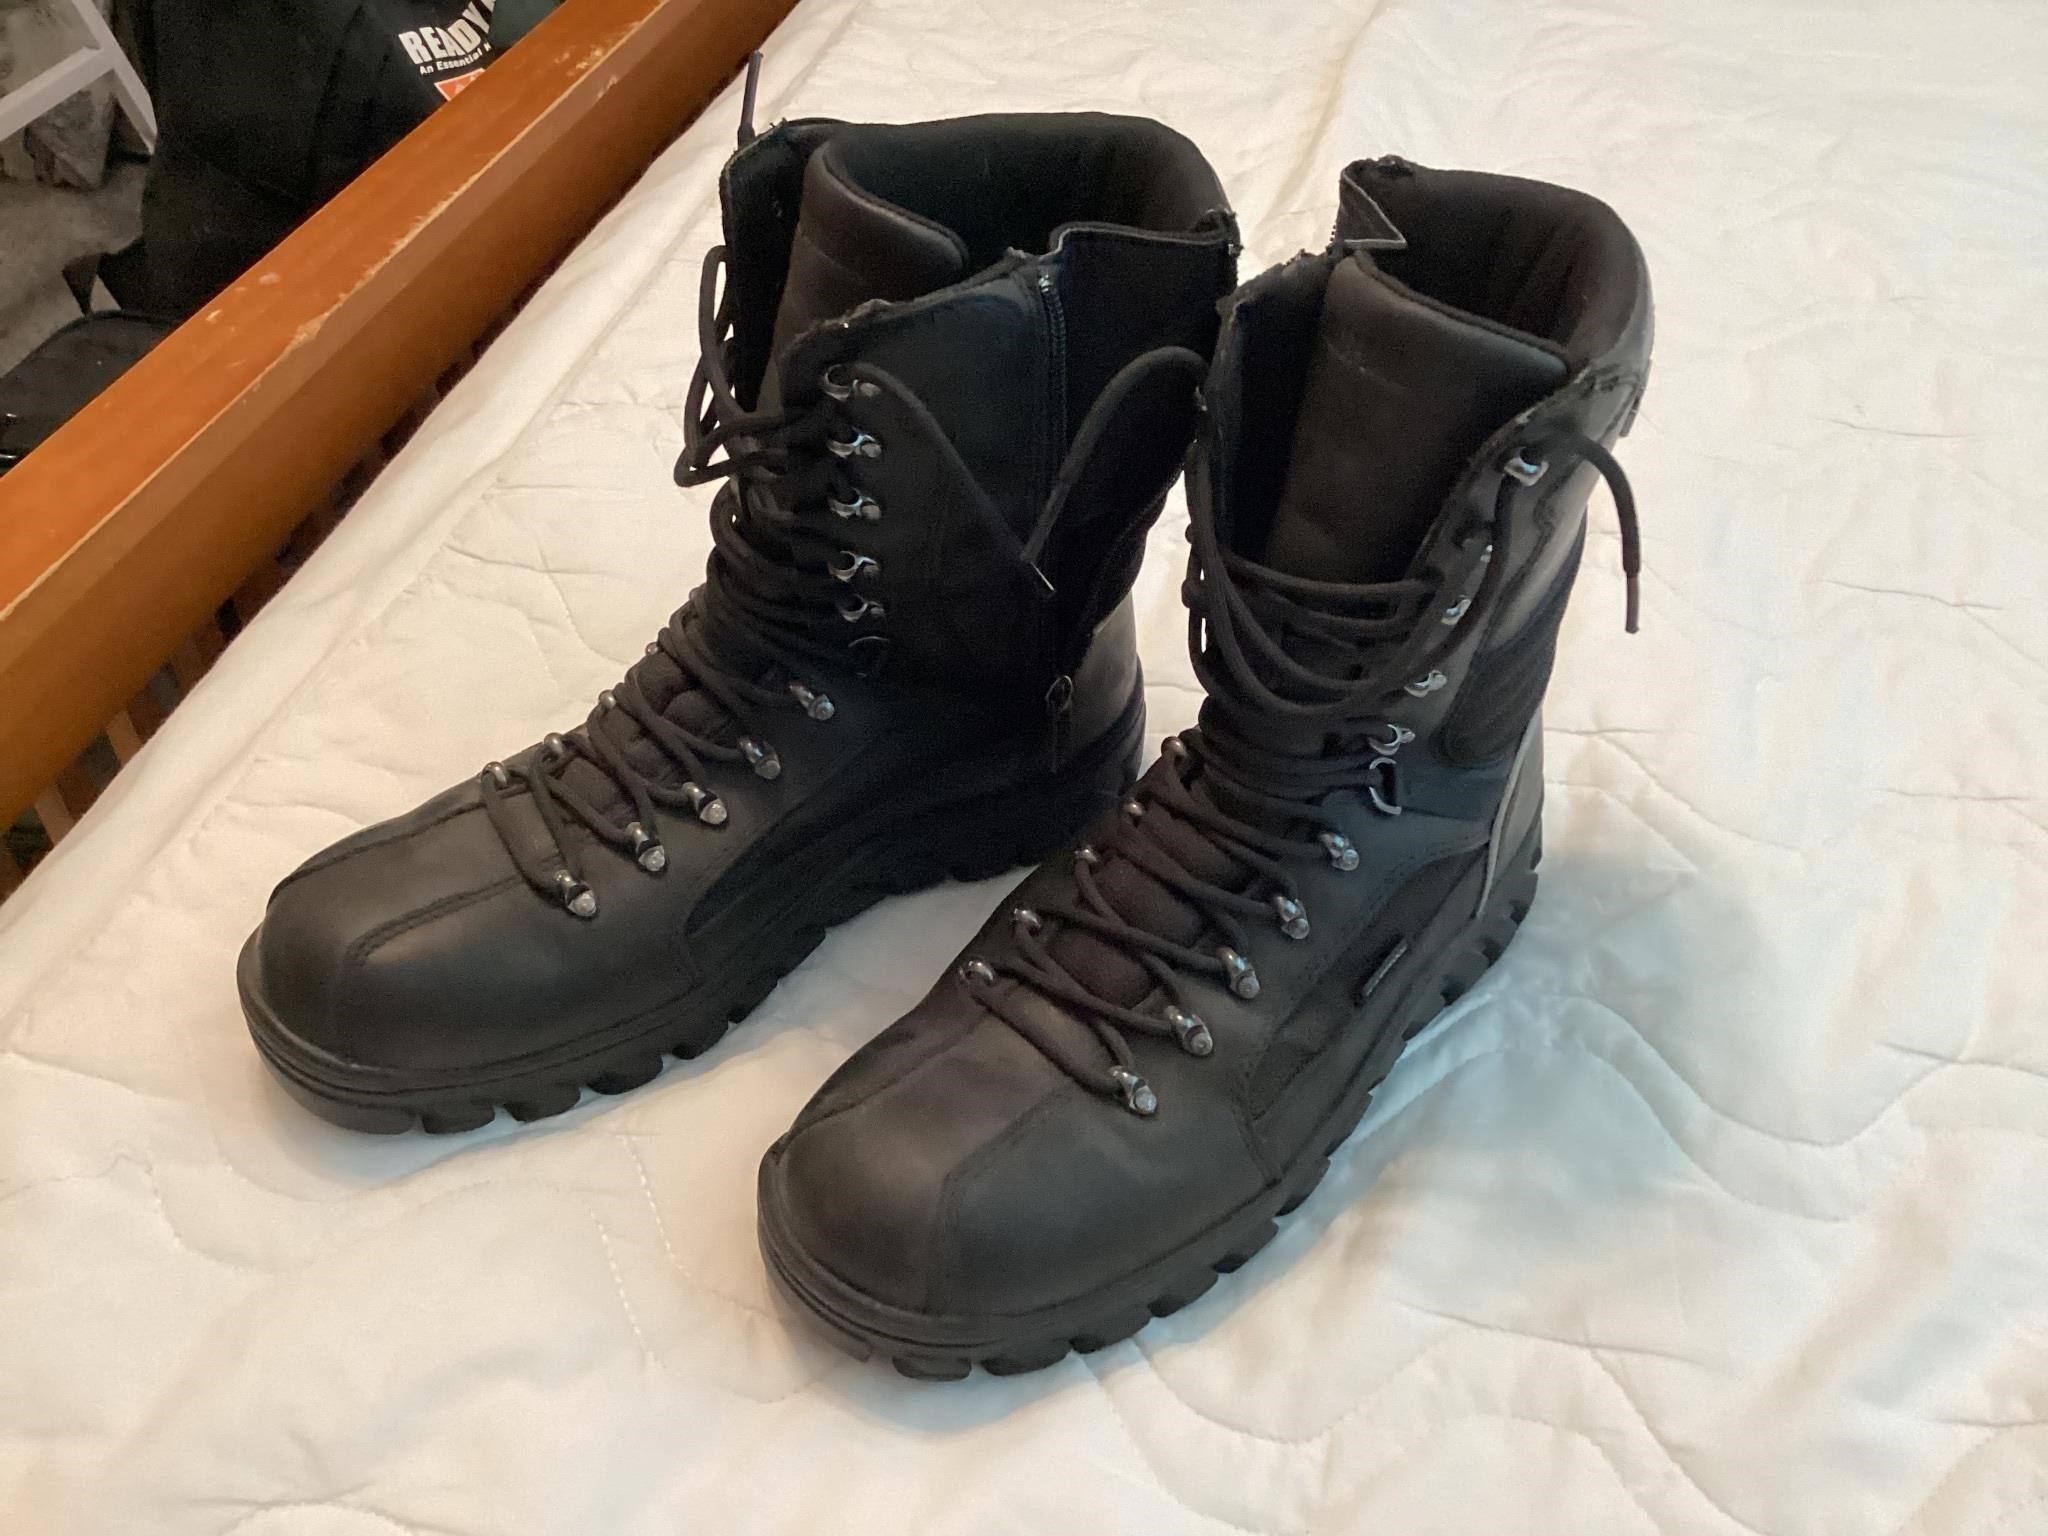 Harley D men’s sz 10 winter boots